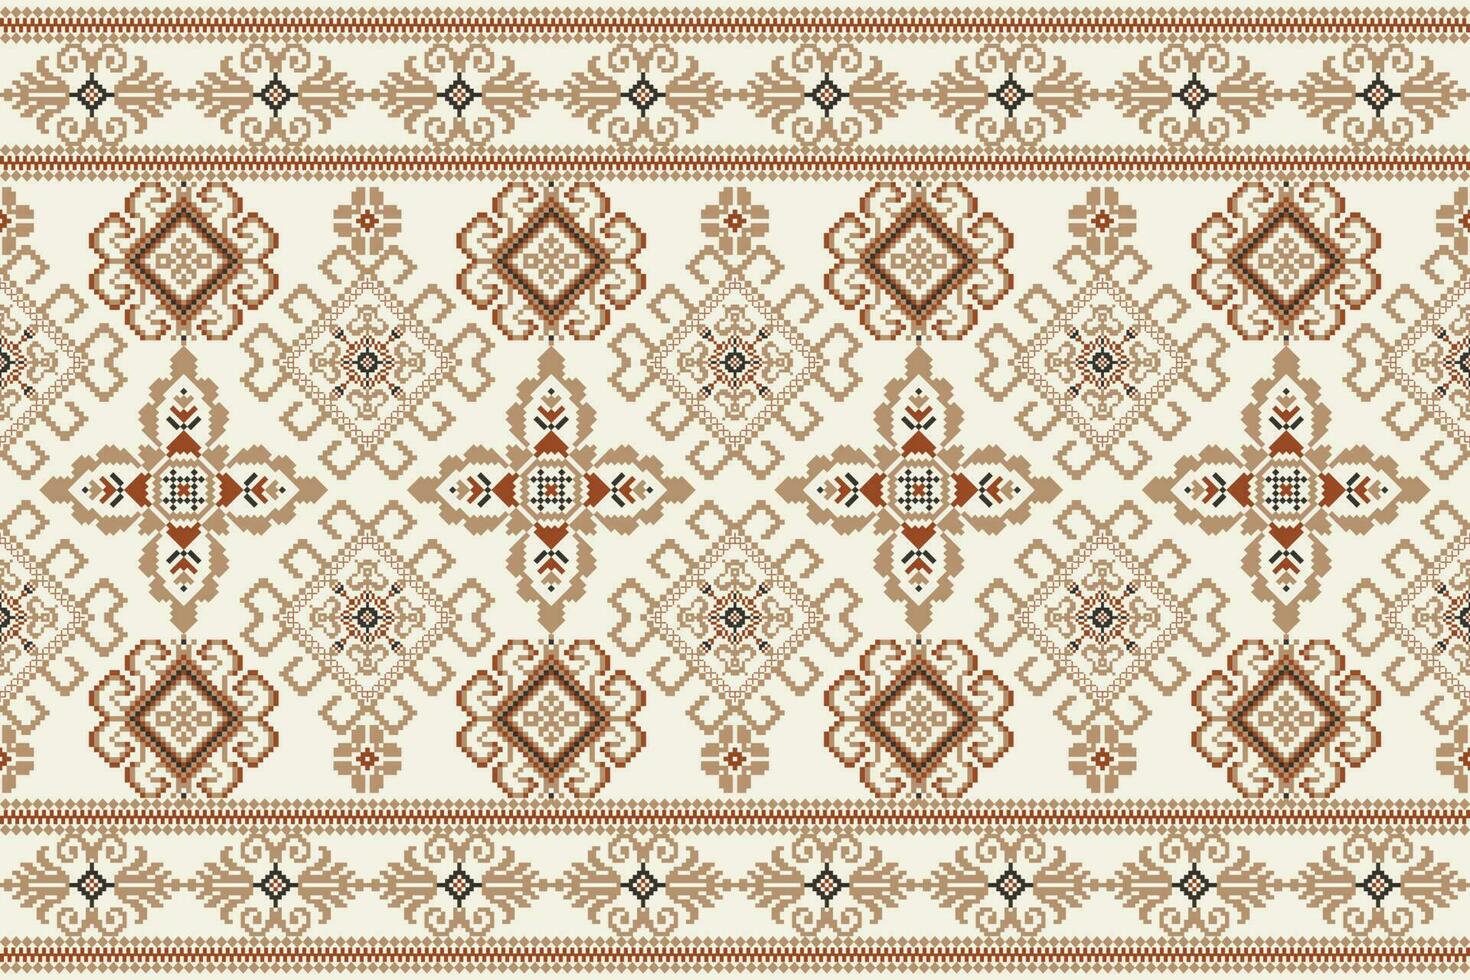 geométrico floral cruzar puntada bordado en blanco antecedentes.étnicos oriental modelo tradicional.azteca estilo resumen vector ilustración.diseño para textura,tela,ropa,envoltura,decoración,bufanda.